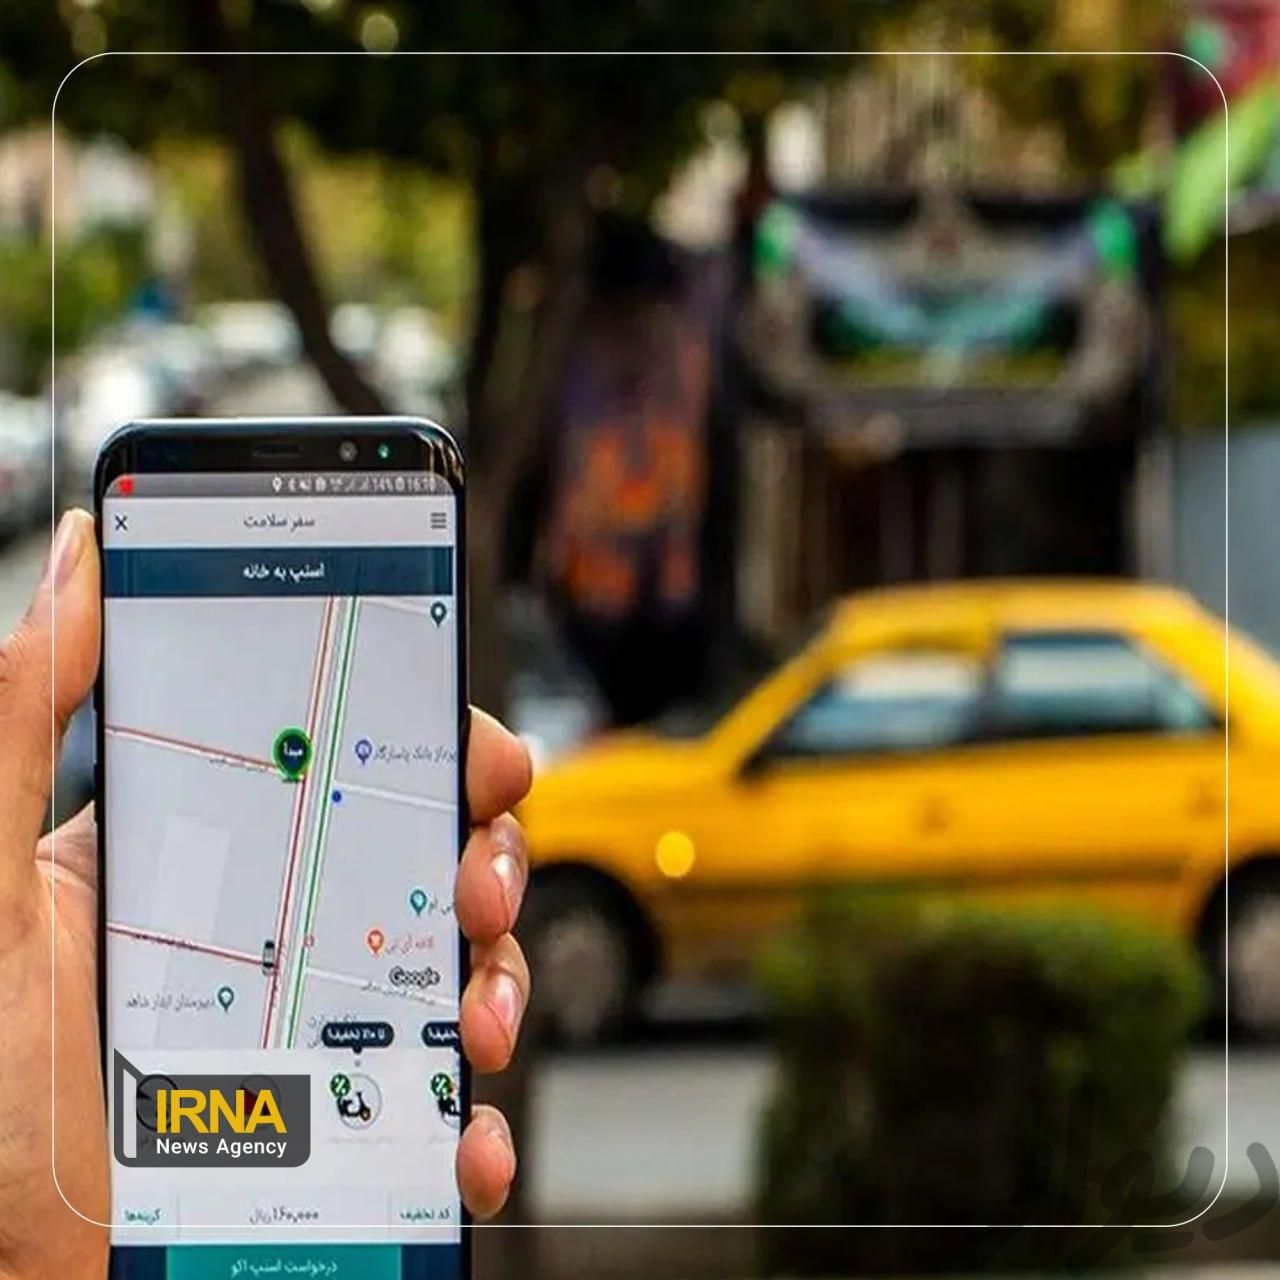 نرم افزار تاکسی اینترنتی و تاکسی هوشمند|مودم و تجهیزات شبکه رایانه|تهران, آذربایجان|دیوار